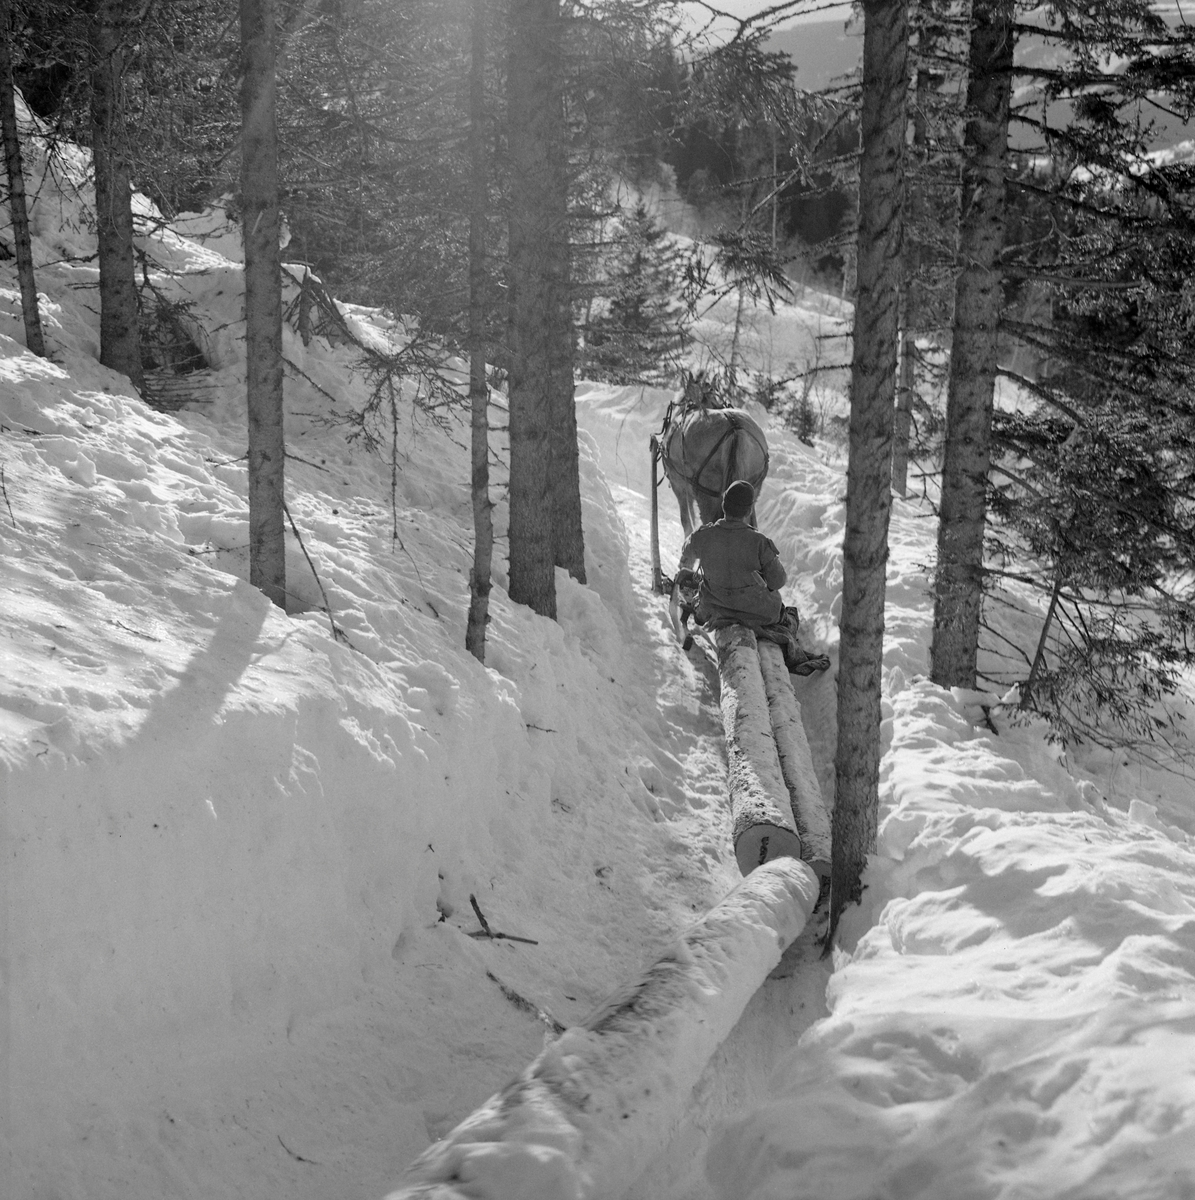 Hankekjøring av tømmer i Vestre Gausdal i mars 1967. Fotografiet er tatt et stykke oppe i lia der hesten, en fjording, trakk de sammenkjedete tømmerstokkene på en smal veg som tømmerkjørerne hadde måkt og tråkket i djupsnøen med sikte på å få tømmeret trygt ut av skogen og videre nedover den bratte lia. Ei normalvending under hankekjøring i det bratte terrenget i Vestre Gausdal var på om lag tre tylfter (36 stokker), men under gode forhold skal det ha vært kjørt vendinger på oppimot 100 stokker. Hvor mye tømmer som fantes i den vendinga som er avbildet her vet vi ikke eksakt. I dette tilfellet vet vi imidlertid at det var tre kilometers kjøreveg. Når strekningen var såpass lang rakk tømmerkjørerne bare to vendinger om dagen i den mørkeste tida (desember-januar). Dette fotografiet ble tatt i mars 1967, da Kjell Søgård og Tore Fossum fra Norsk Skogbruksmuseum var i Vestre Gausdal for å gjøre opptak til en kulturhistorisk dokumentasjonsfilm om tømmerkjøringstradisjonene i bygda. I kommentarene til filmen sier gausdølen Nils Bjørge følgende: «Under hankekjøring lyt det væra godt samspell mellom hæst og kar, ska’ vendinga gå godt. Enkelte øykje lære konsta bæ’re ell andre. Døm tek hardt ti før å få løyst vendinga i starta, og så legg døm seg kraftig ti sæla’n der det er flate og tunge strekninger.»